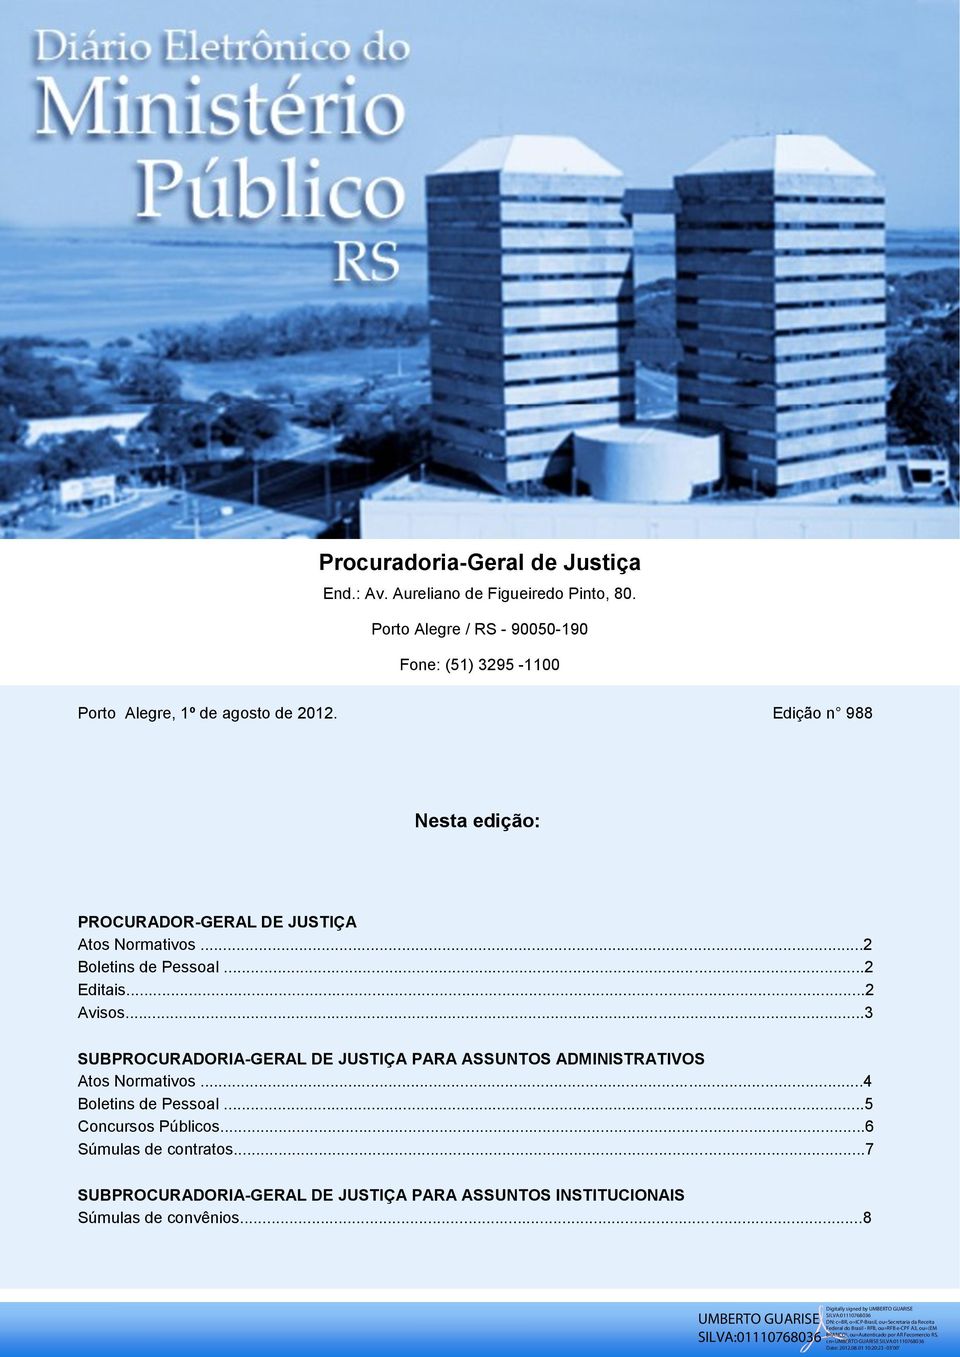 Edição n 988 Nesta edição: PROCURADOR-GERAL DE JUSTIÇA Atos Normativos...2 Boletins de Pessoal...2 Editais...2 Avisos.